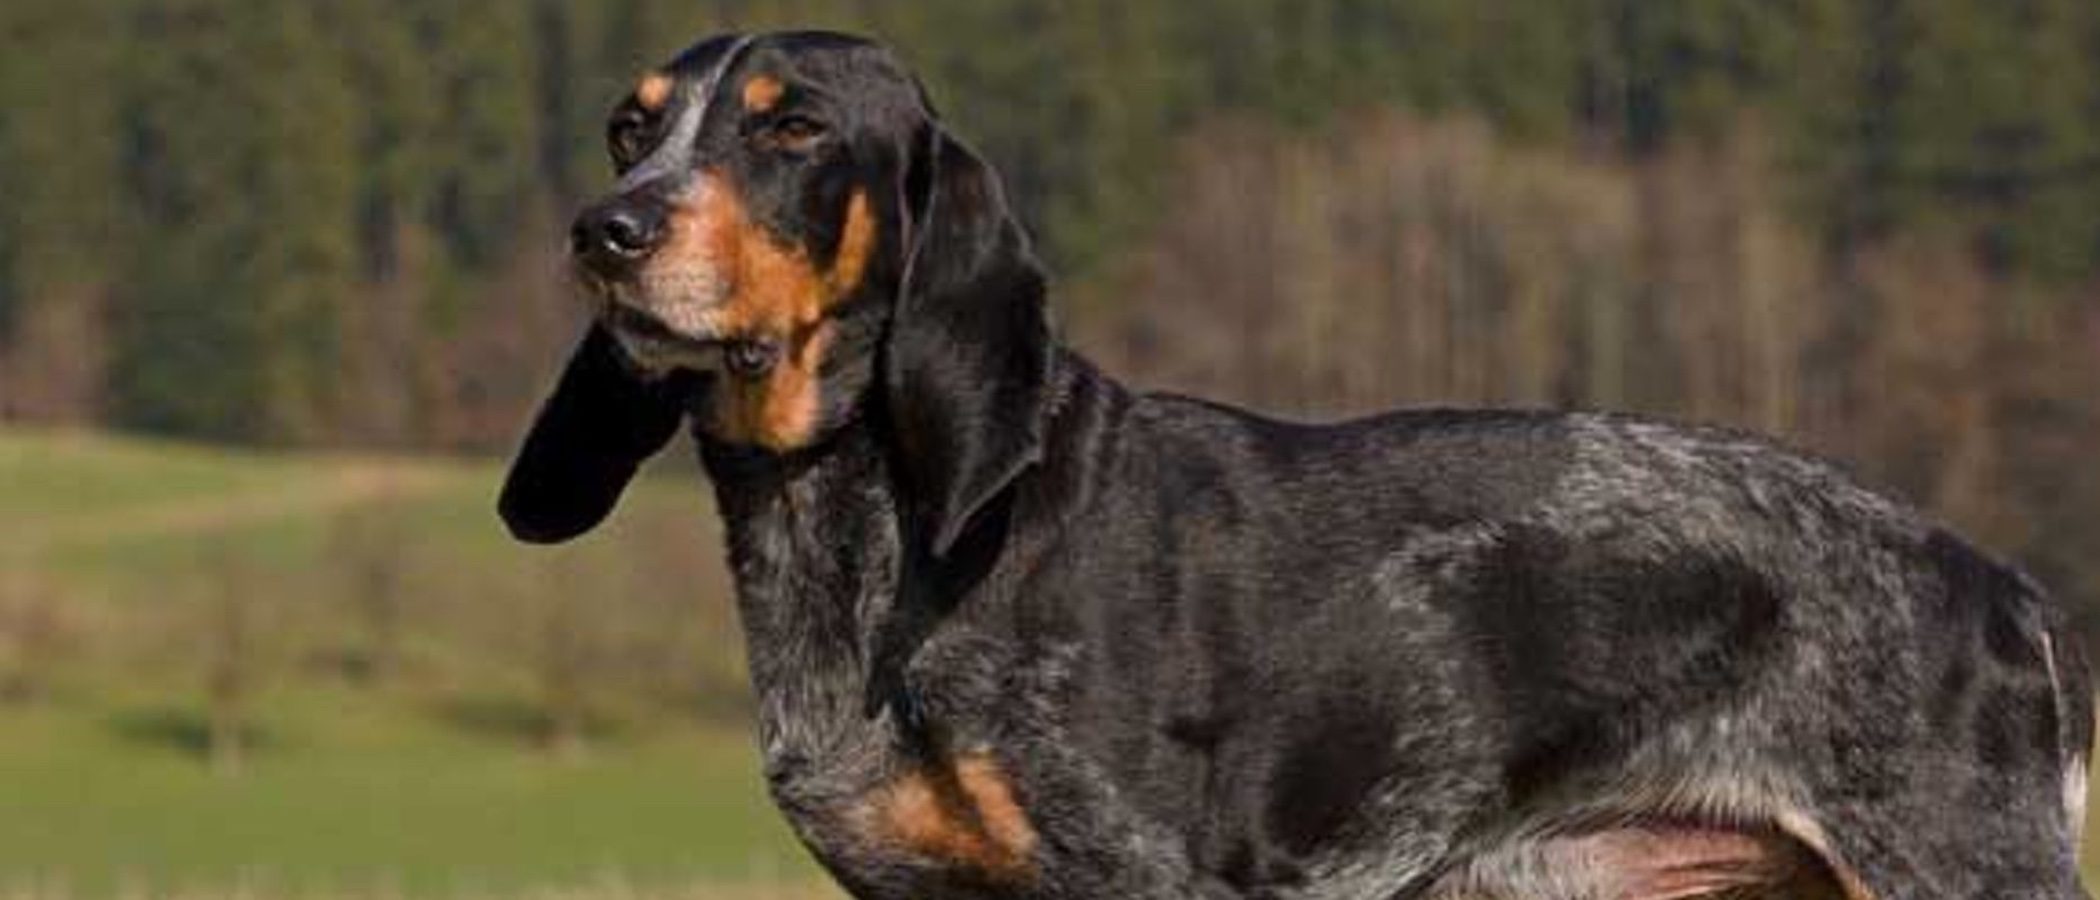 Razas de perros: Schweizerischer Niederlaufhund o pequeño sabueso de Suiza